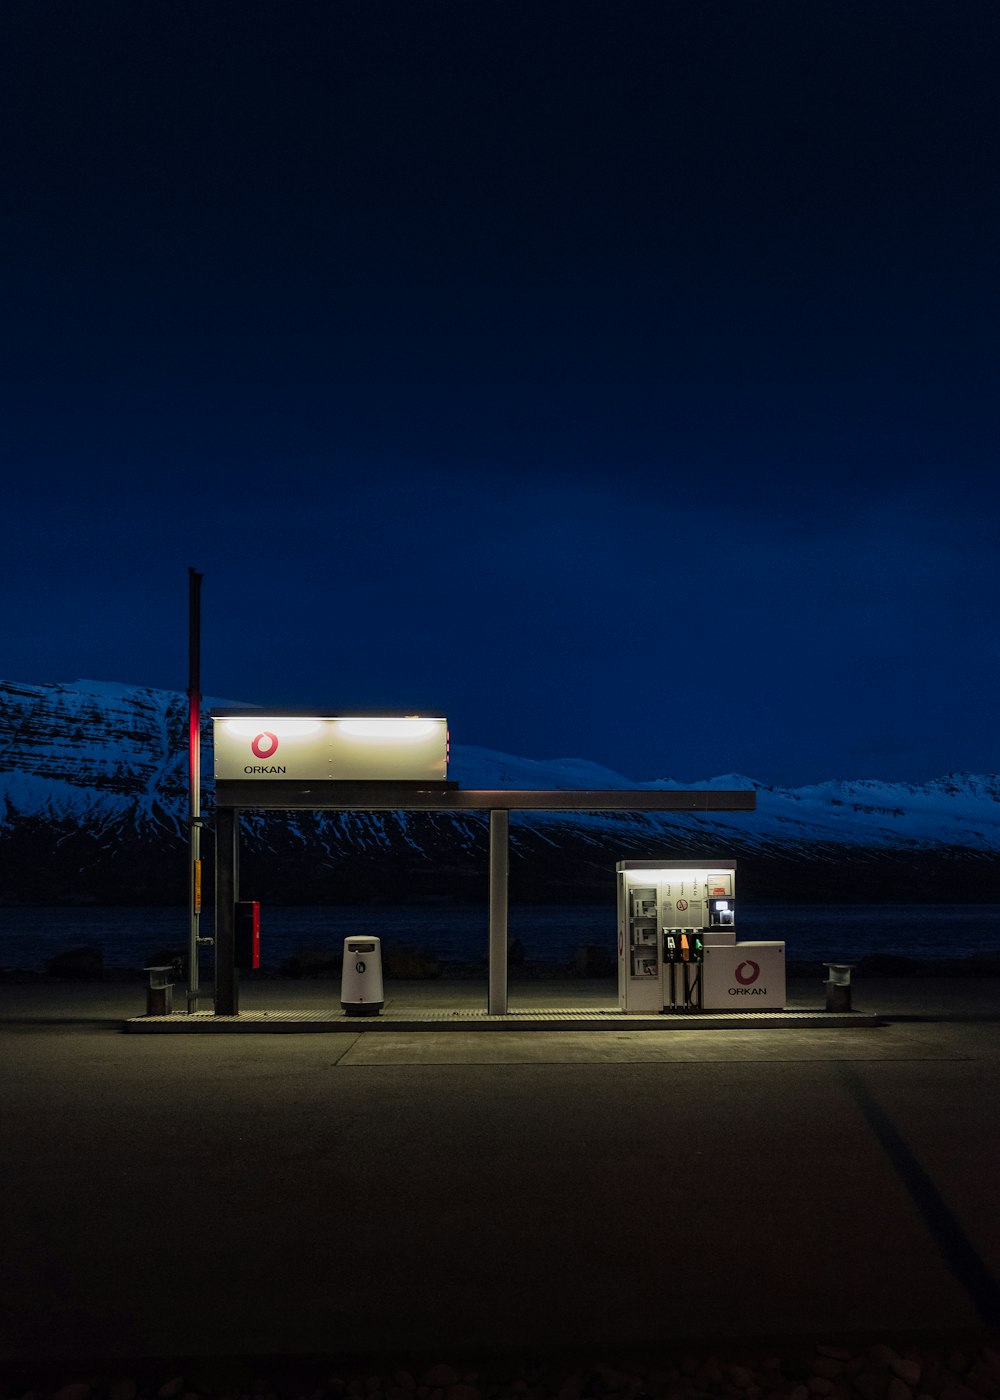 gasoline station during nighttime photo – Free Night Image on Unsplash